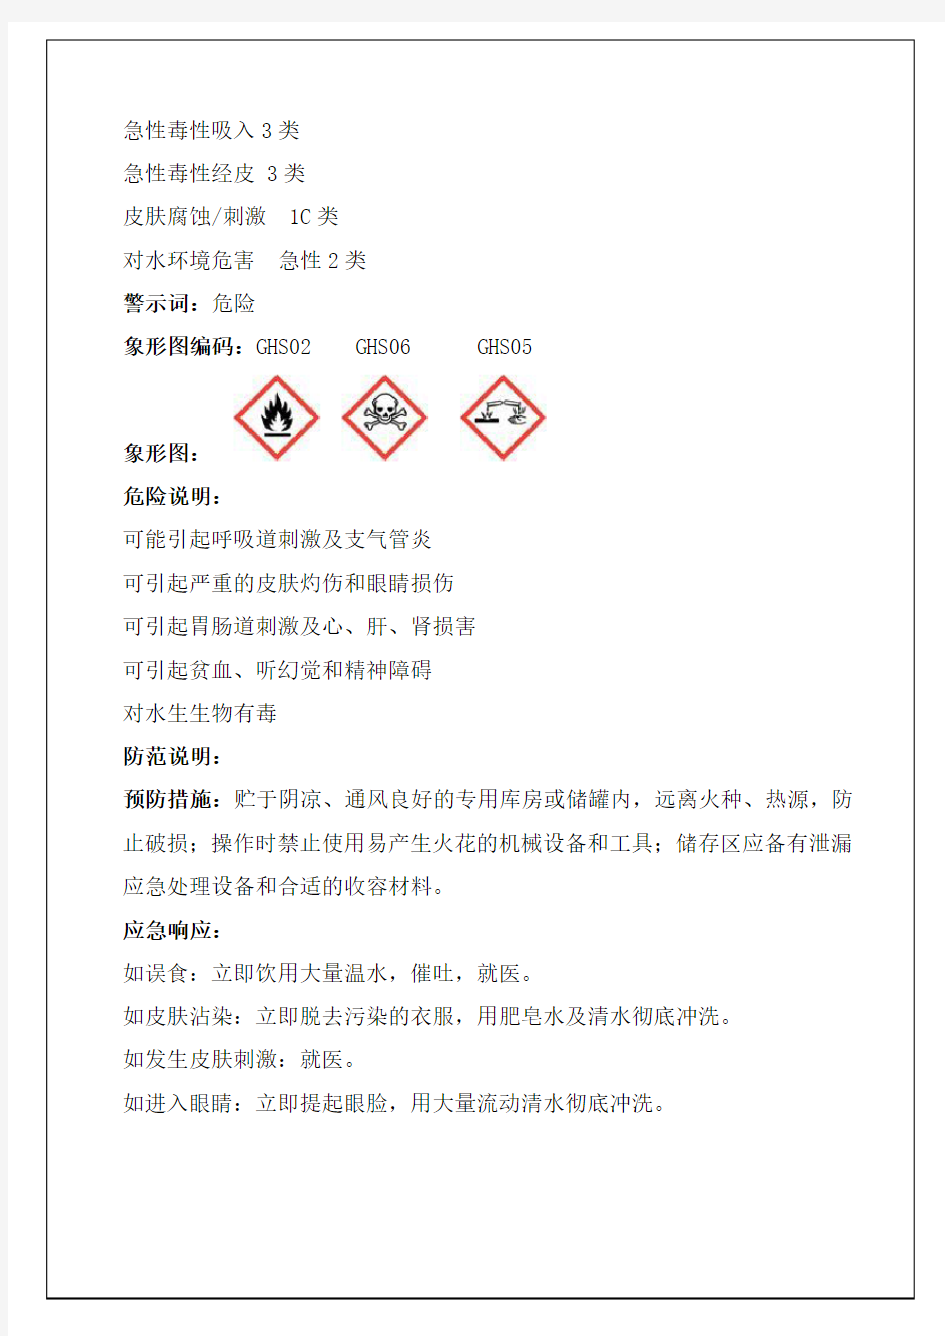 乙醛化学品安全技术说明书(2014版)